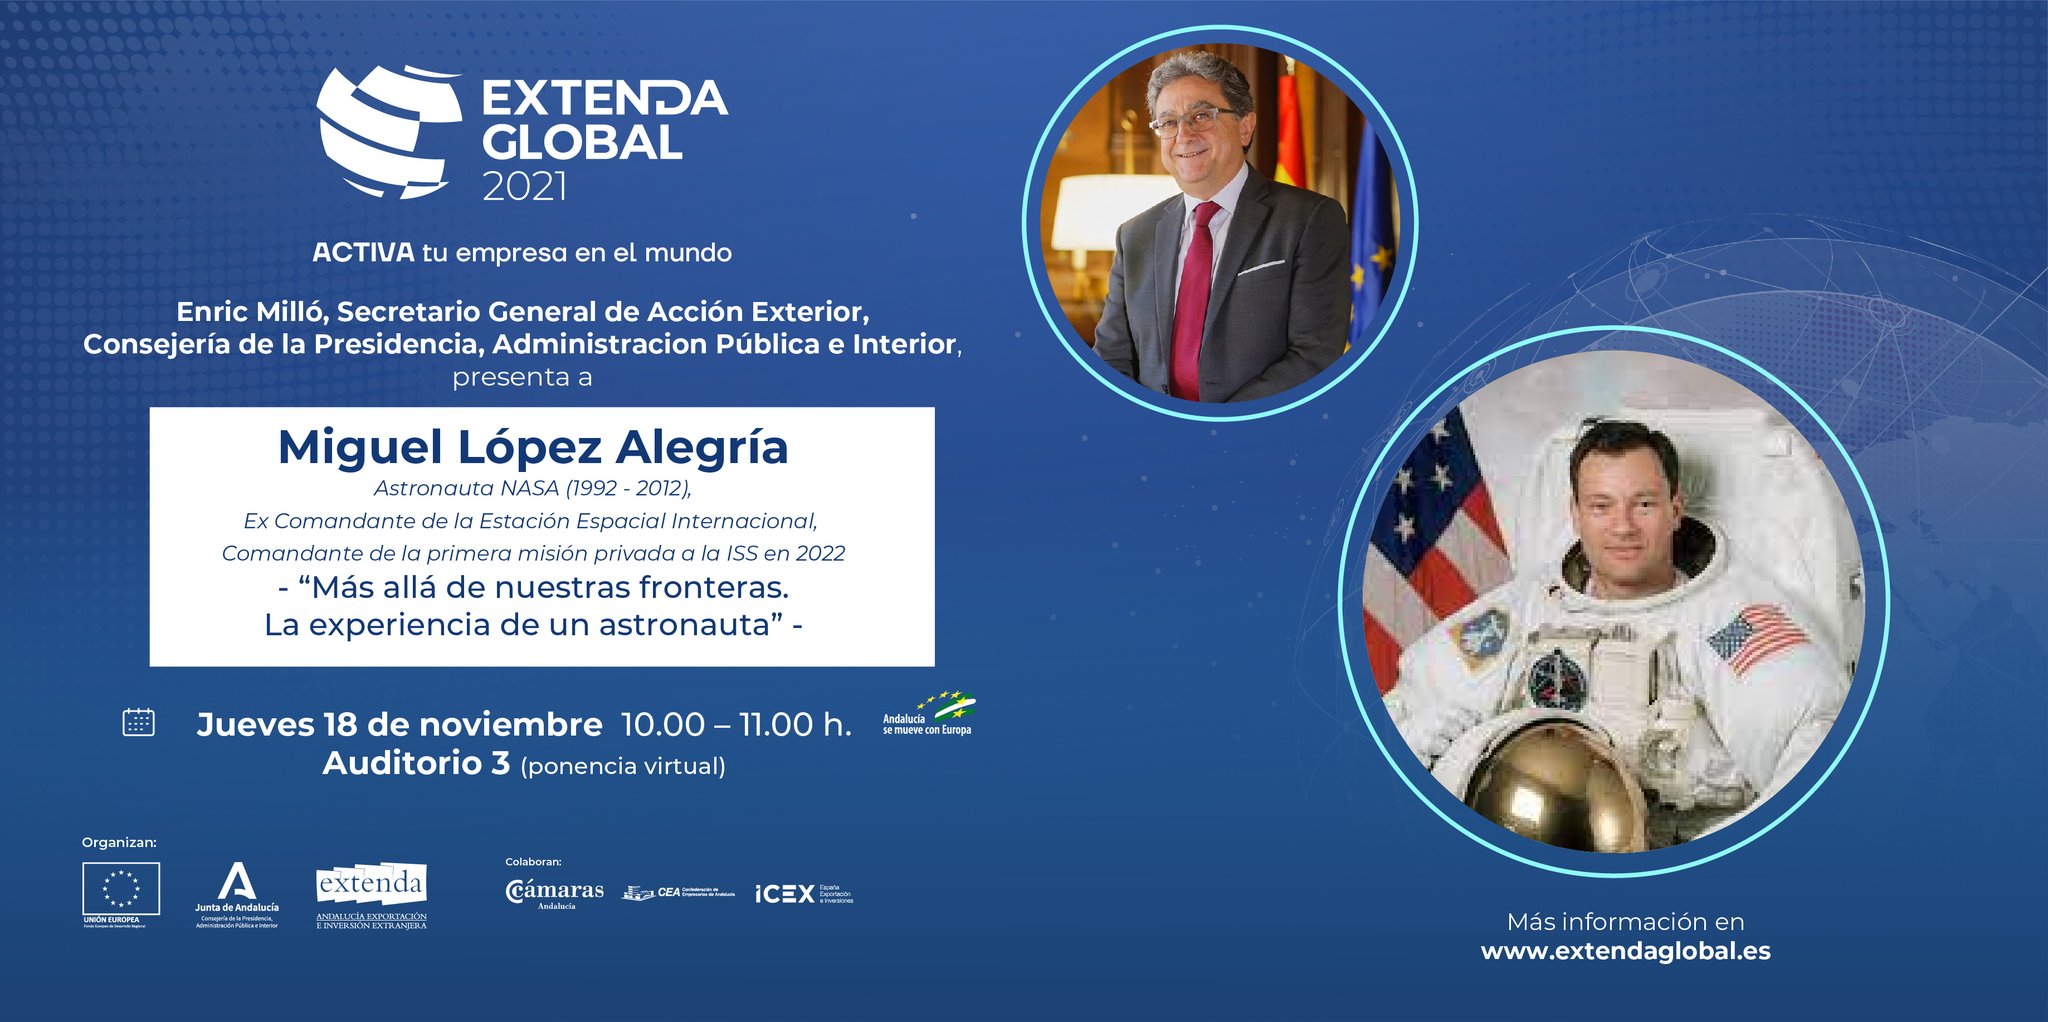 Miguel López Alegría: Experiencia de un astronauta